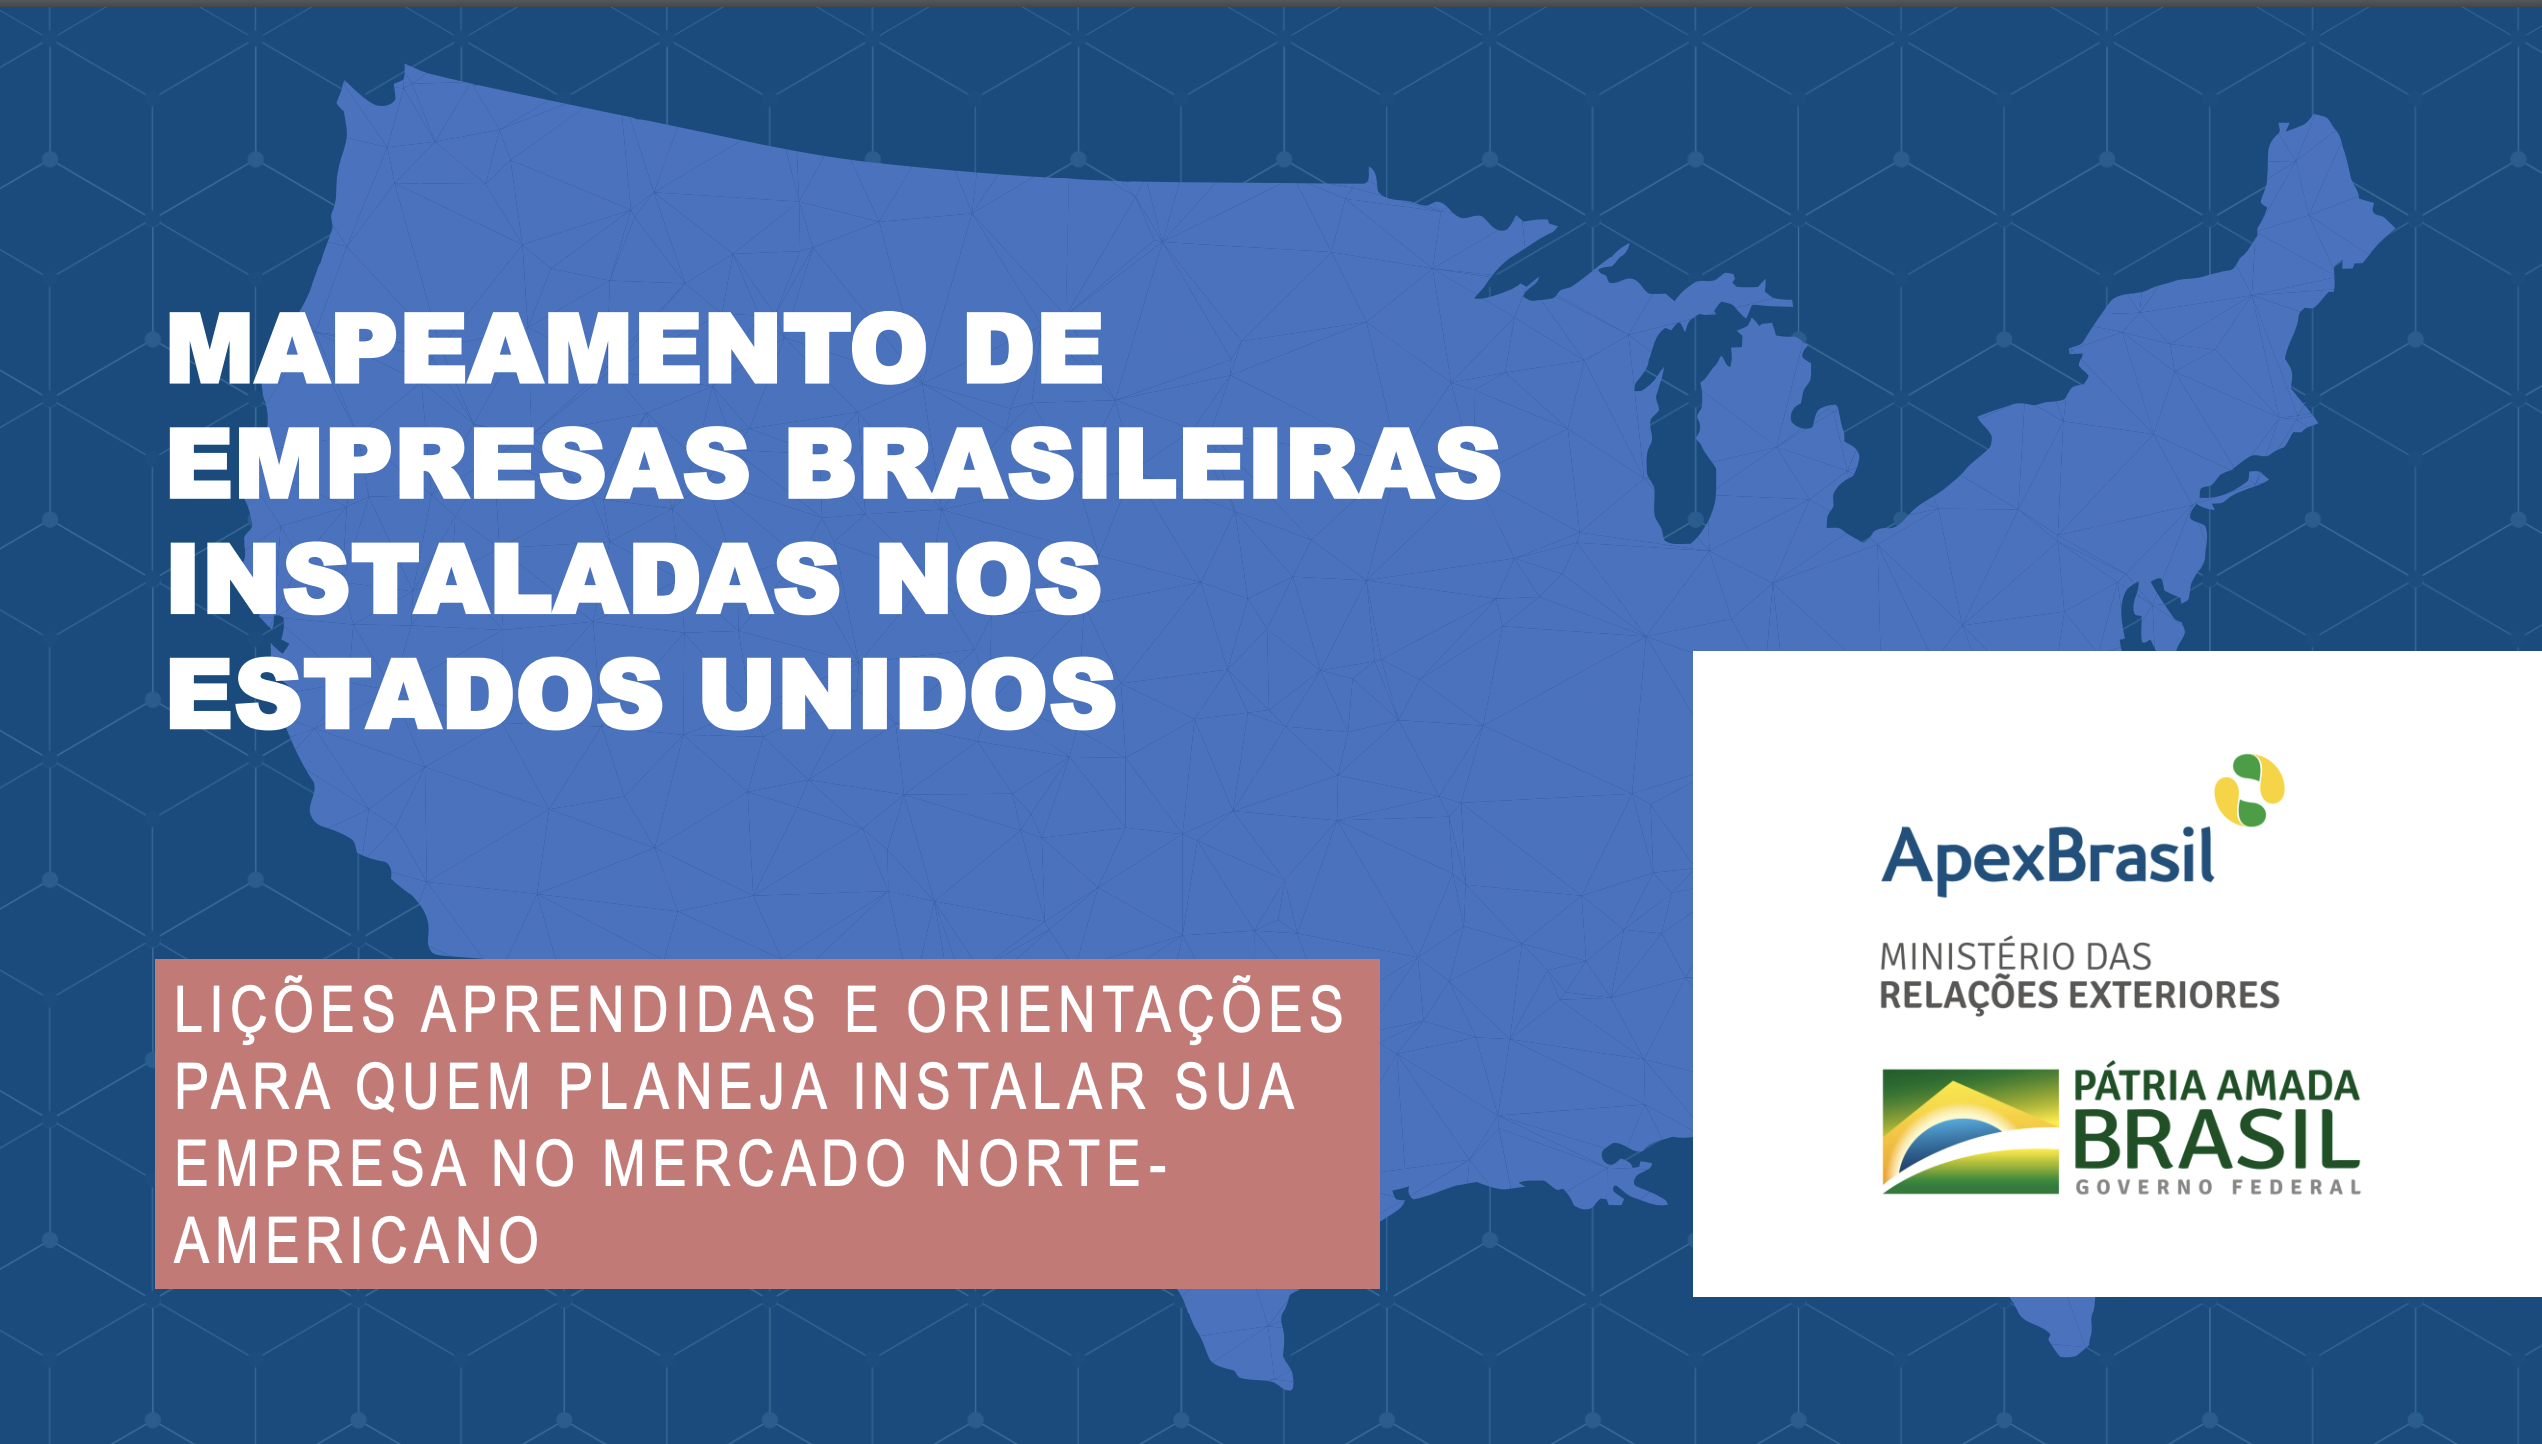 Apex-Brasil realiza estudo sobre empresas brasileiras instaladas nos EUA -  Apex-Brasil